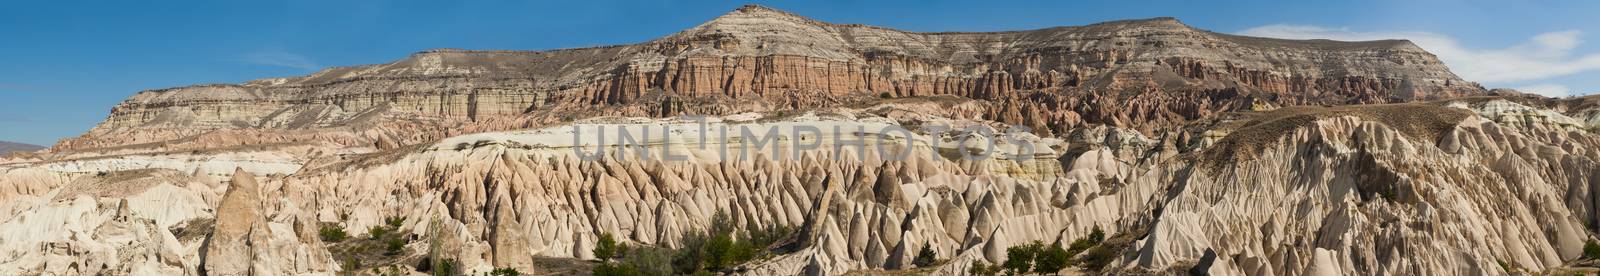 Cappadocia by fyletto